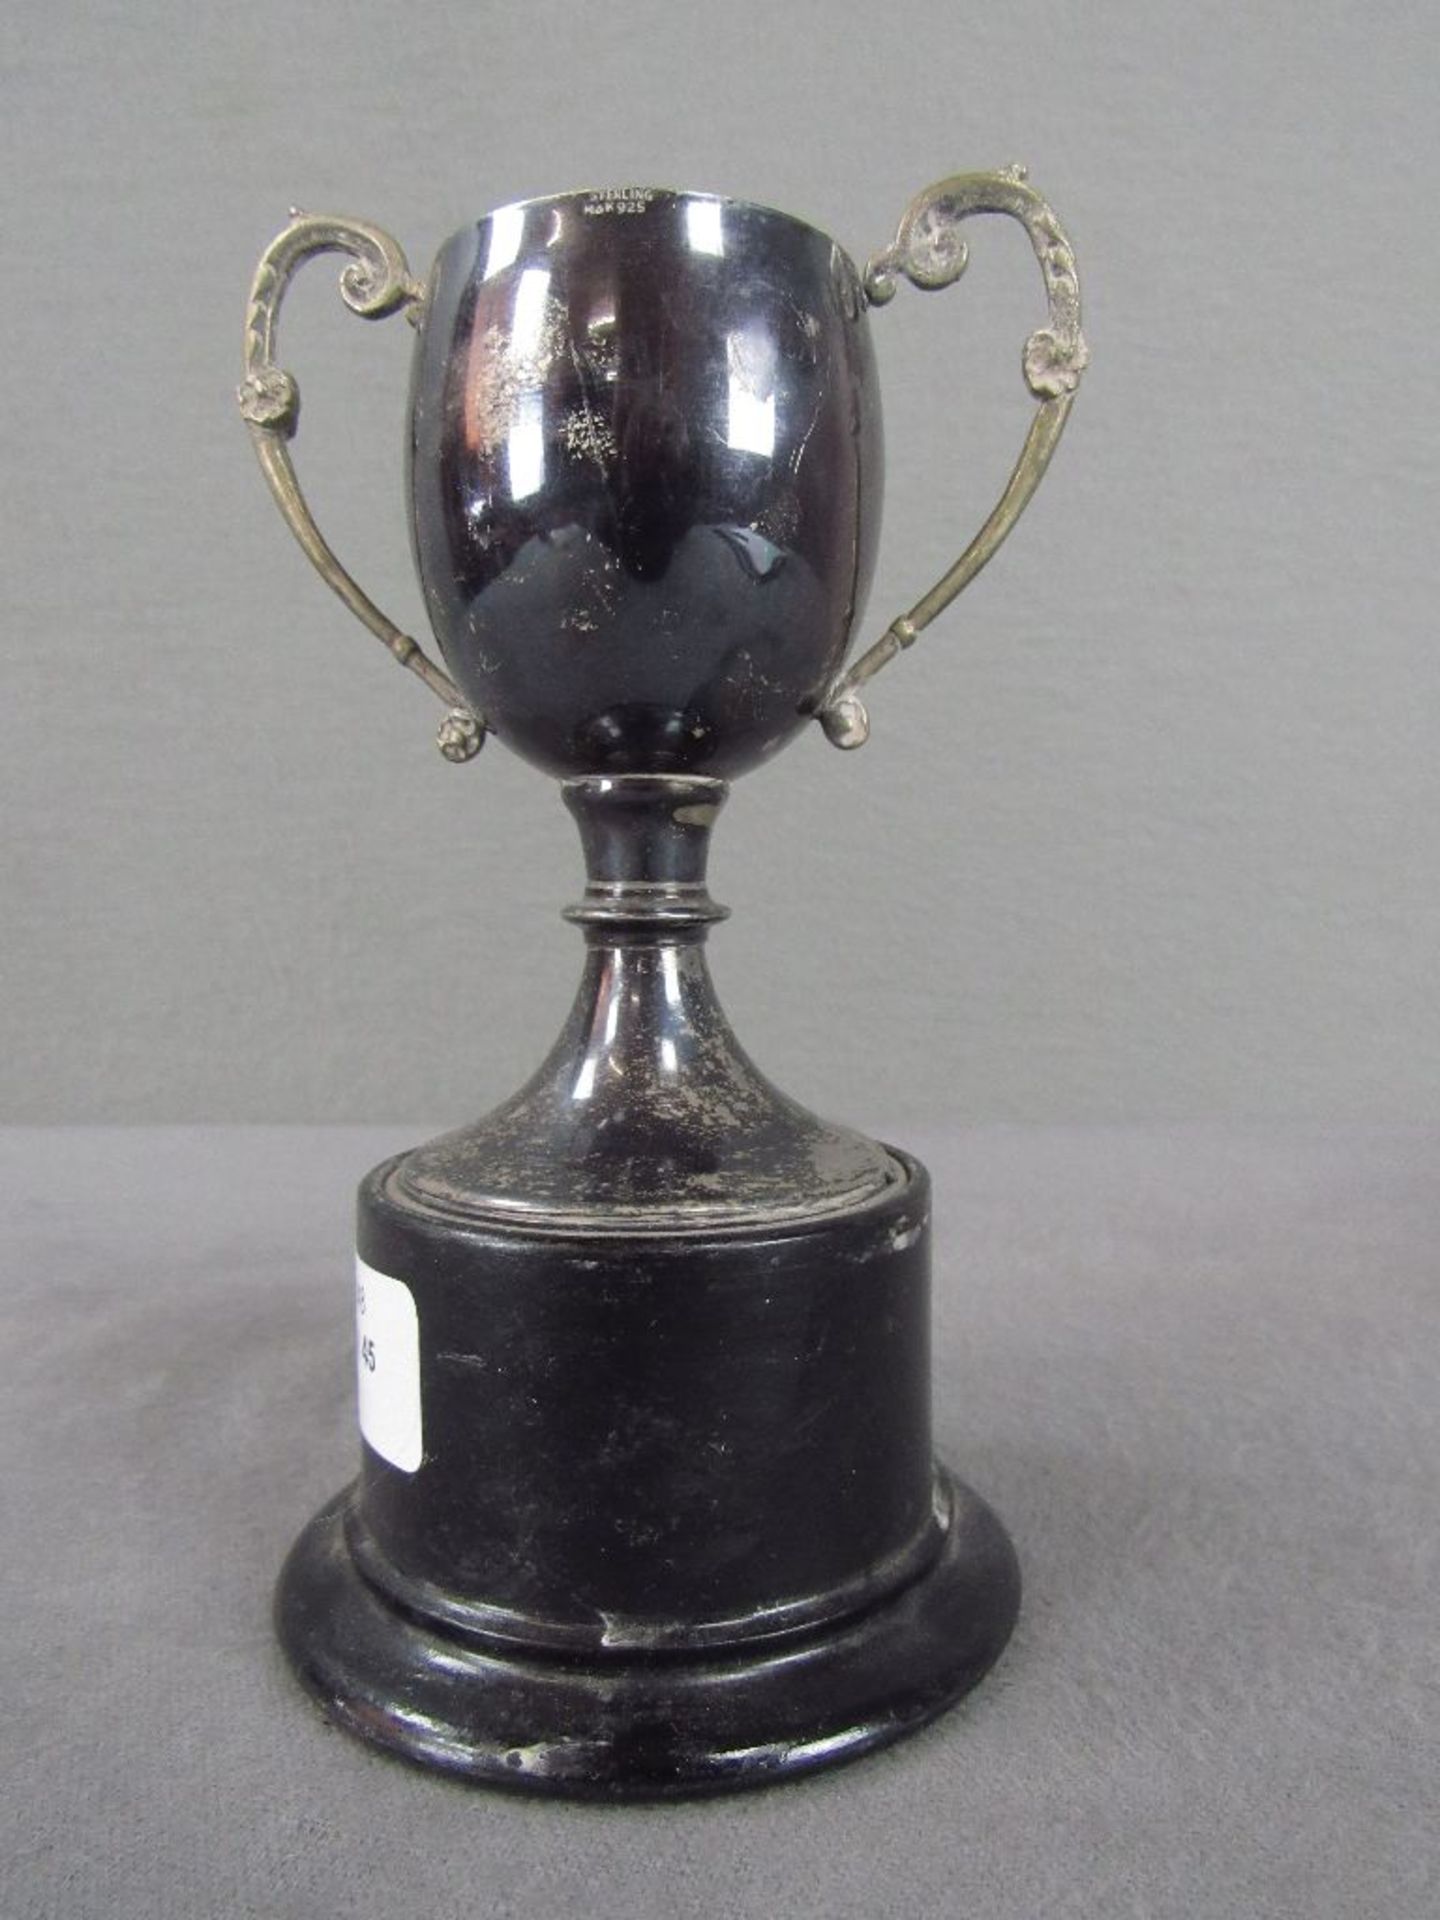 Autorennen Pokal in Griechenland Silber zwei Handhaben 16cm hoch - Image 2 of 4